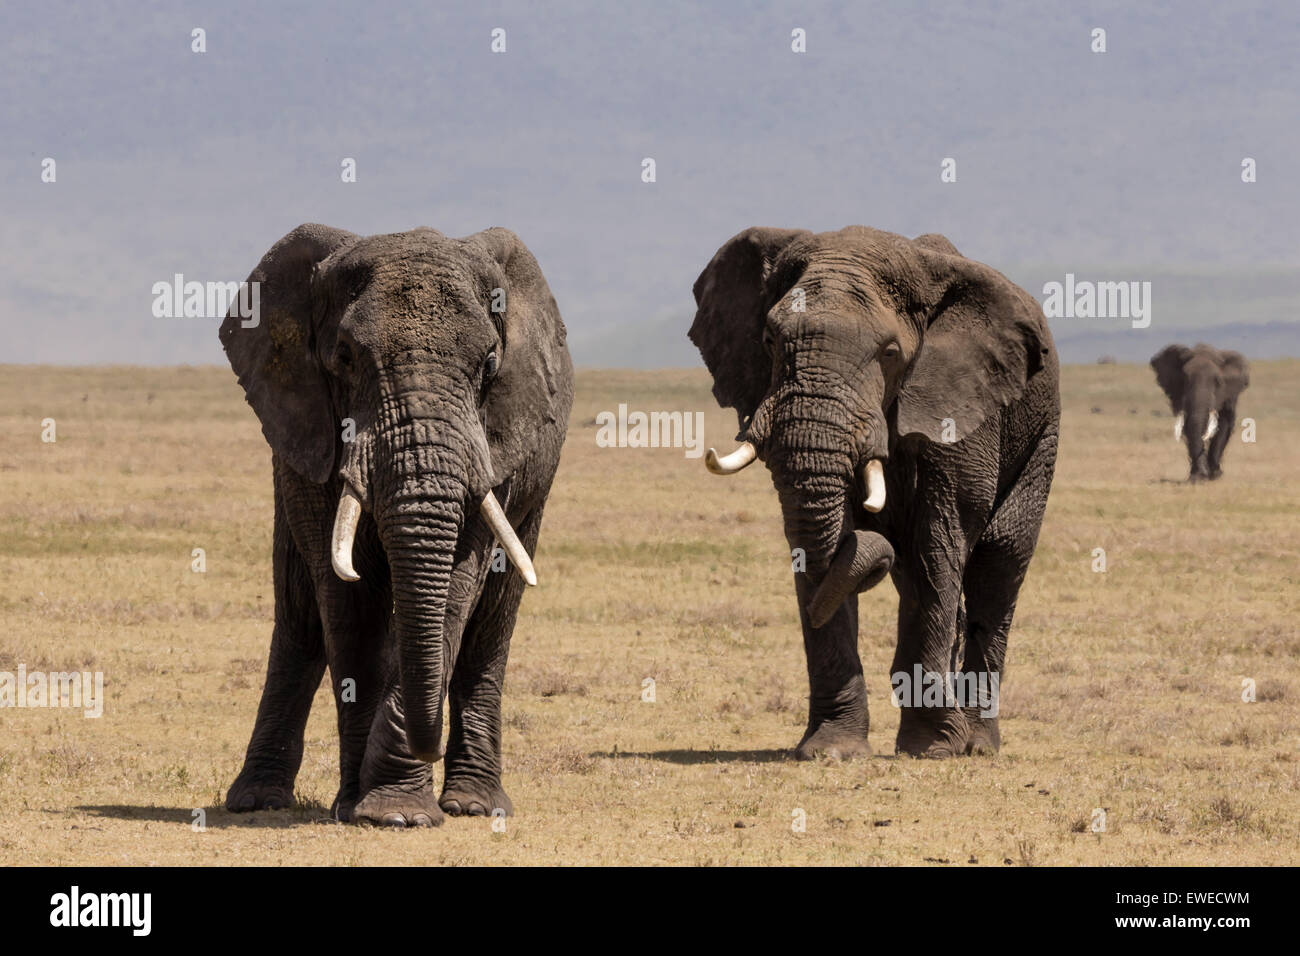 Elephants (Loxodonta africana) on the march in the Ngorogoro Crater Tanzania Stock Photo